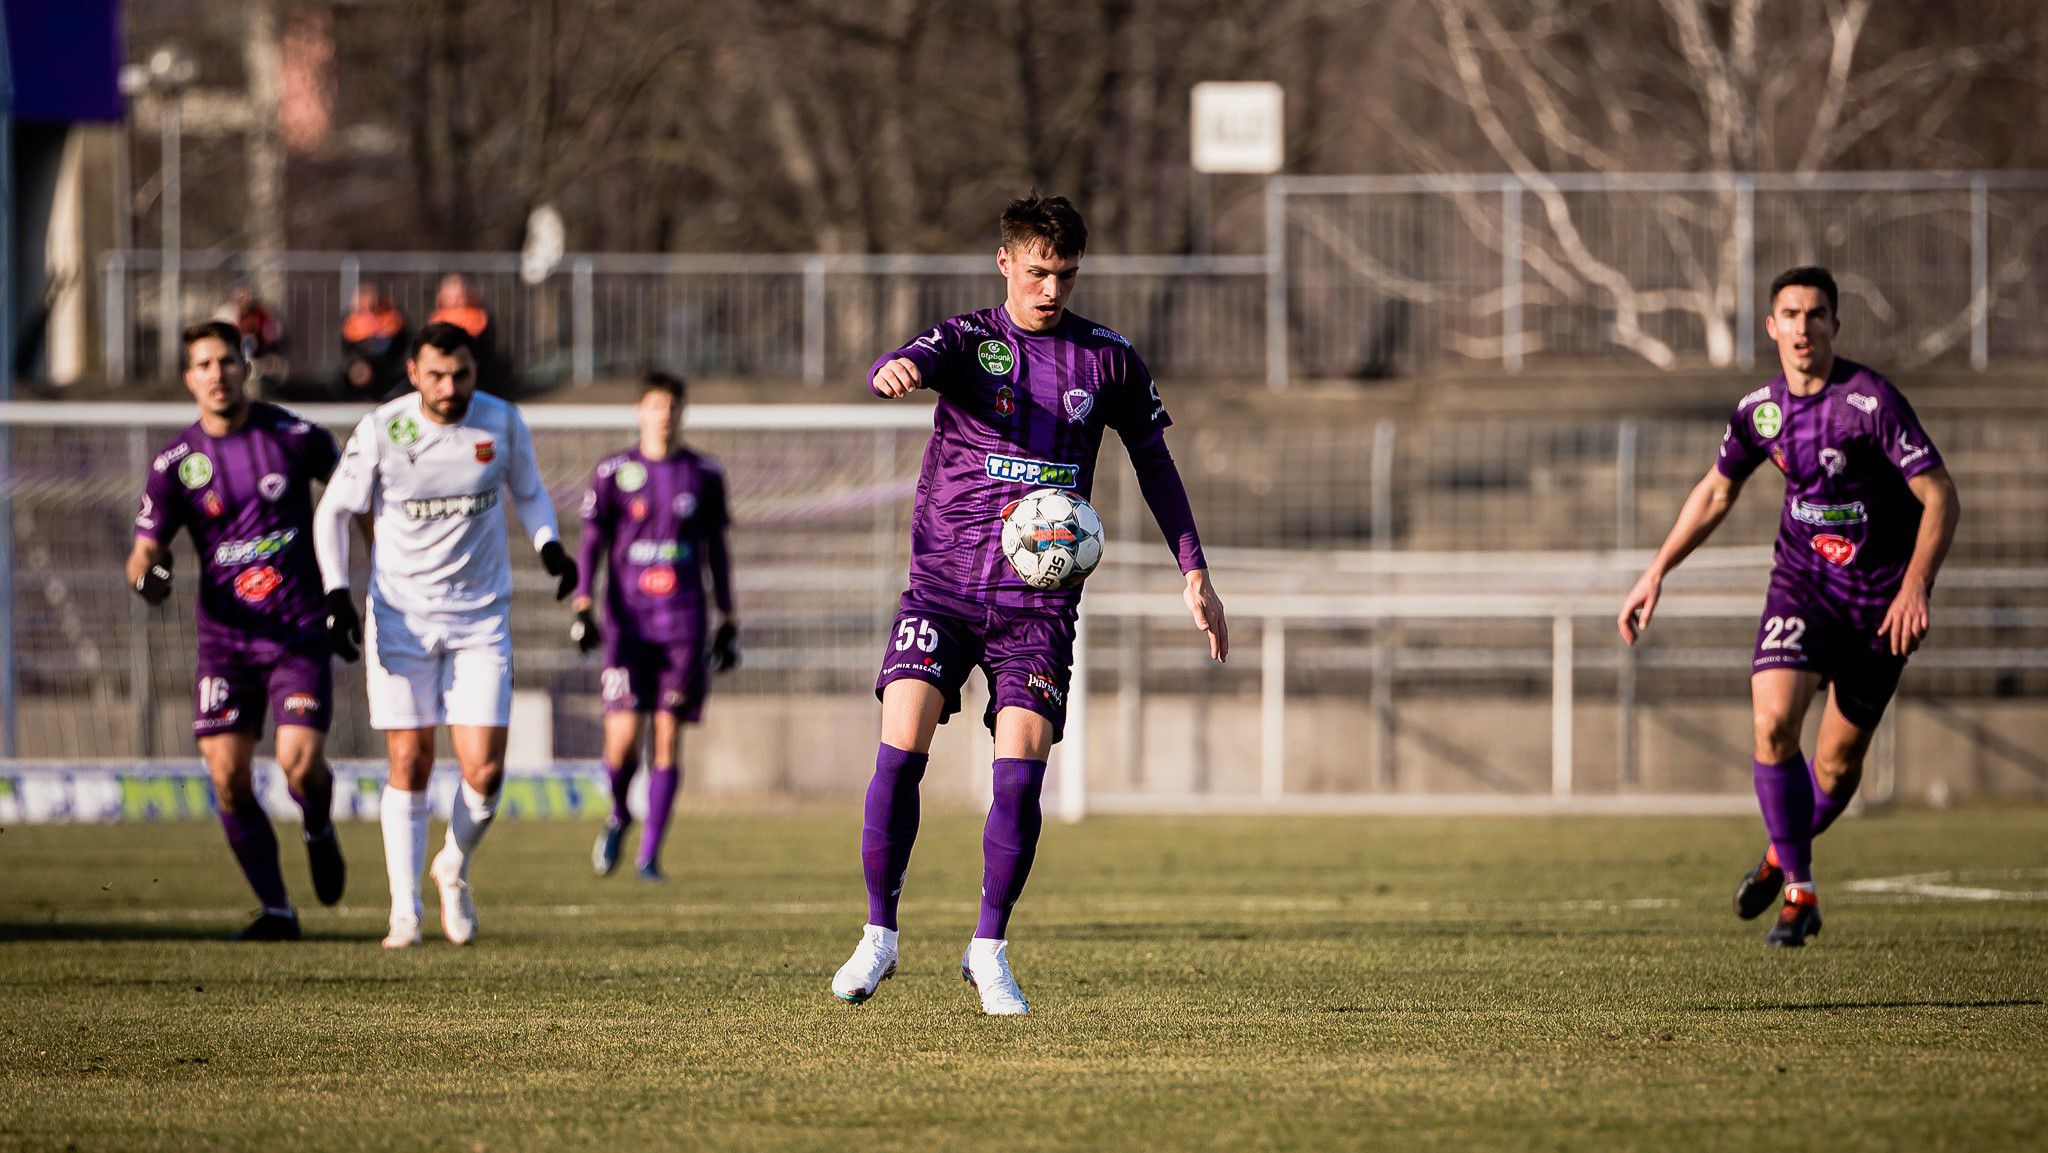 Katona Bálint a második félidő elején nagy gólt szerzett, amellyel a Kecskemét nyert idegenben. (Fotó: kecskemetite.hu)